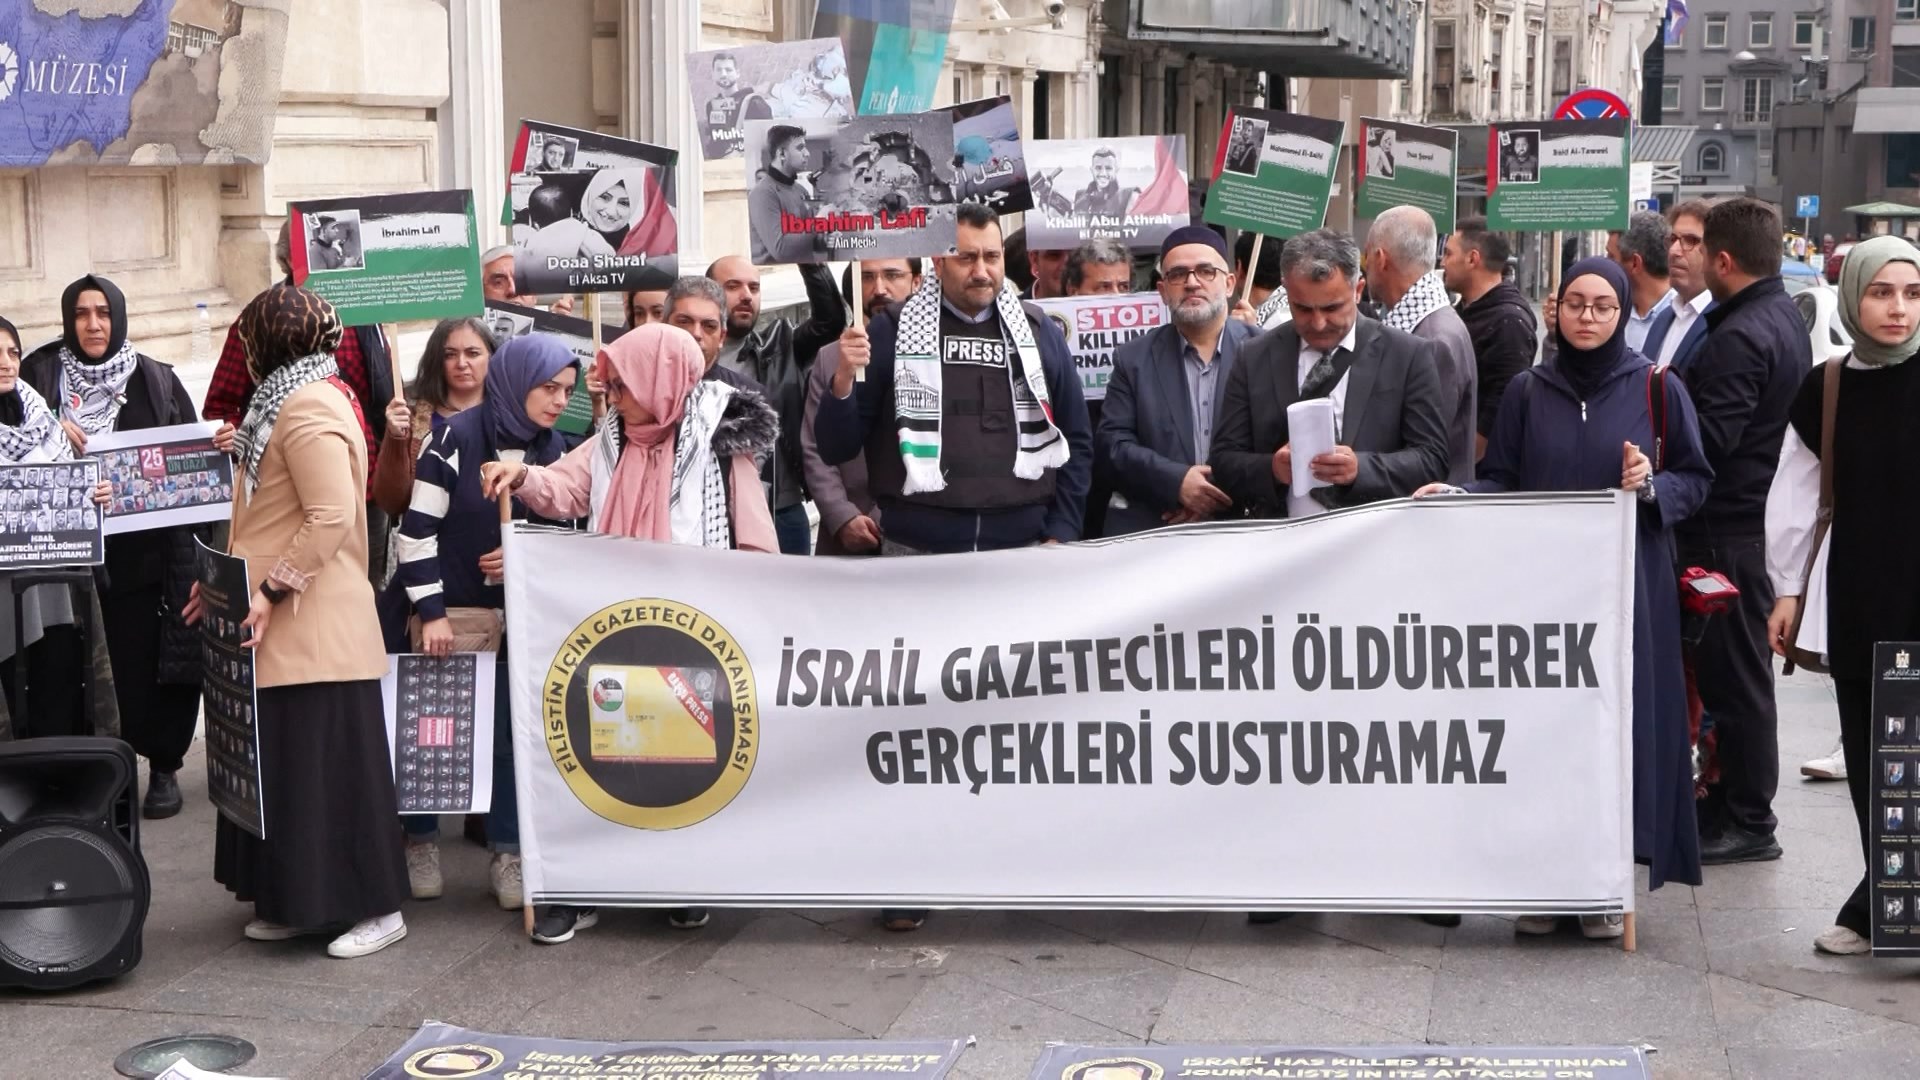 Taksim'de gazetecilerden Filistin’deki meslektaşları için eylem